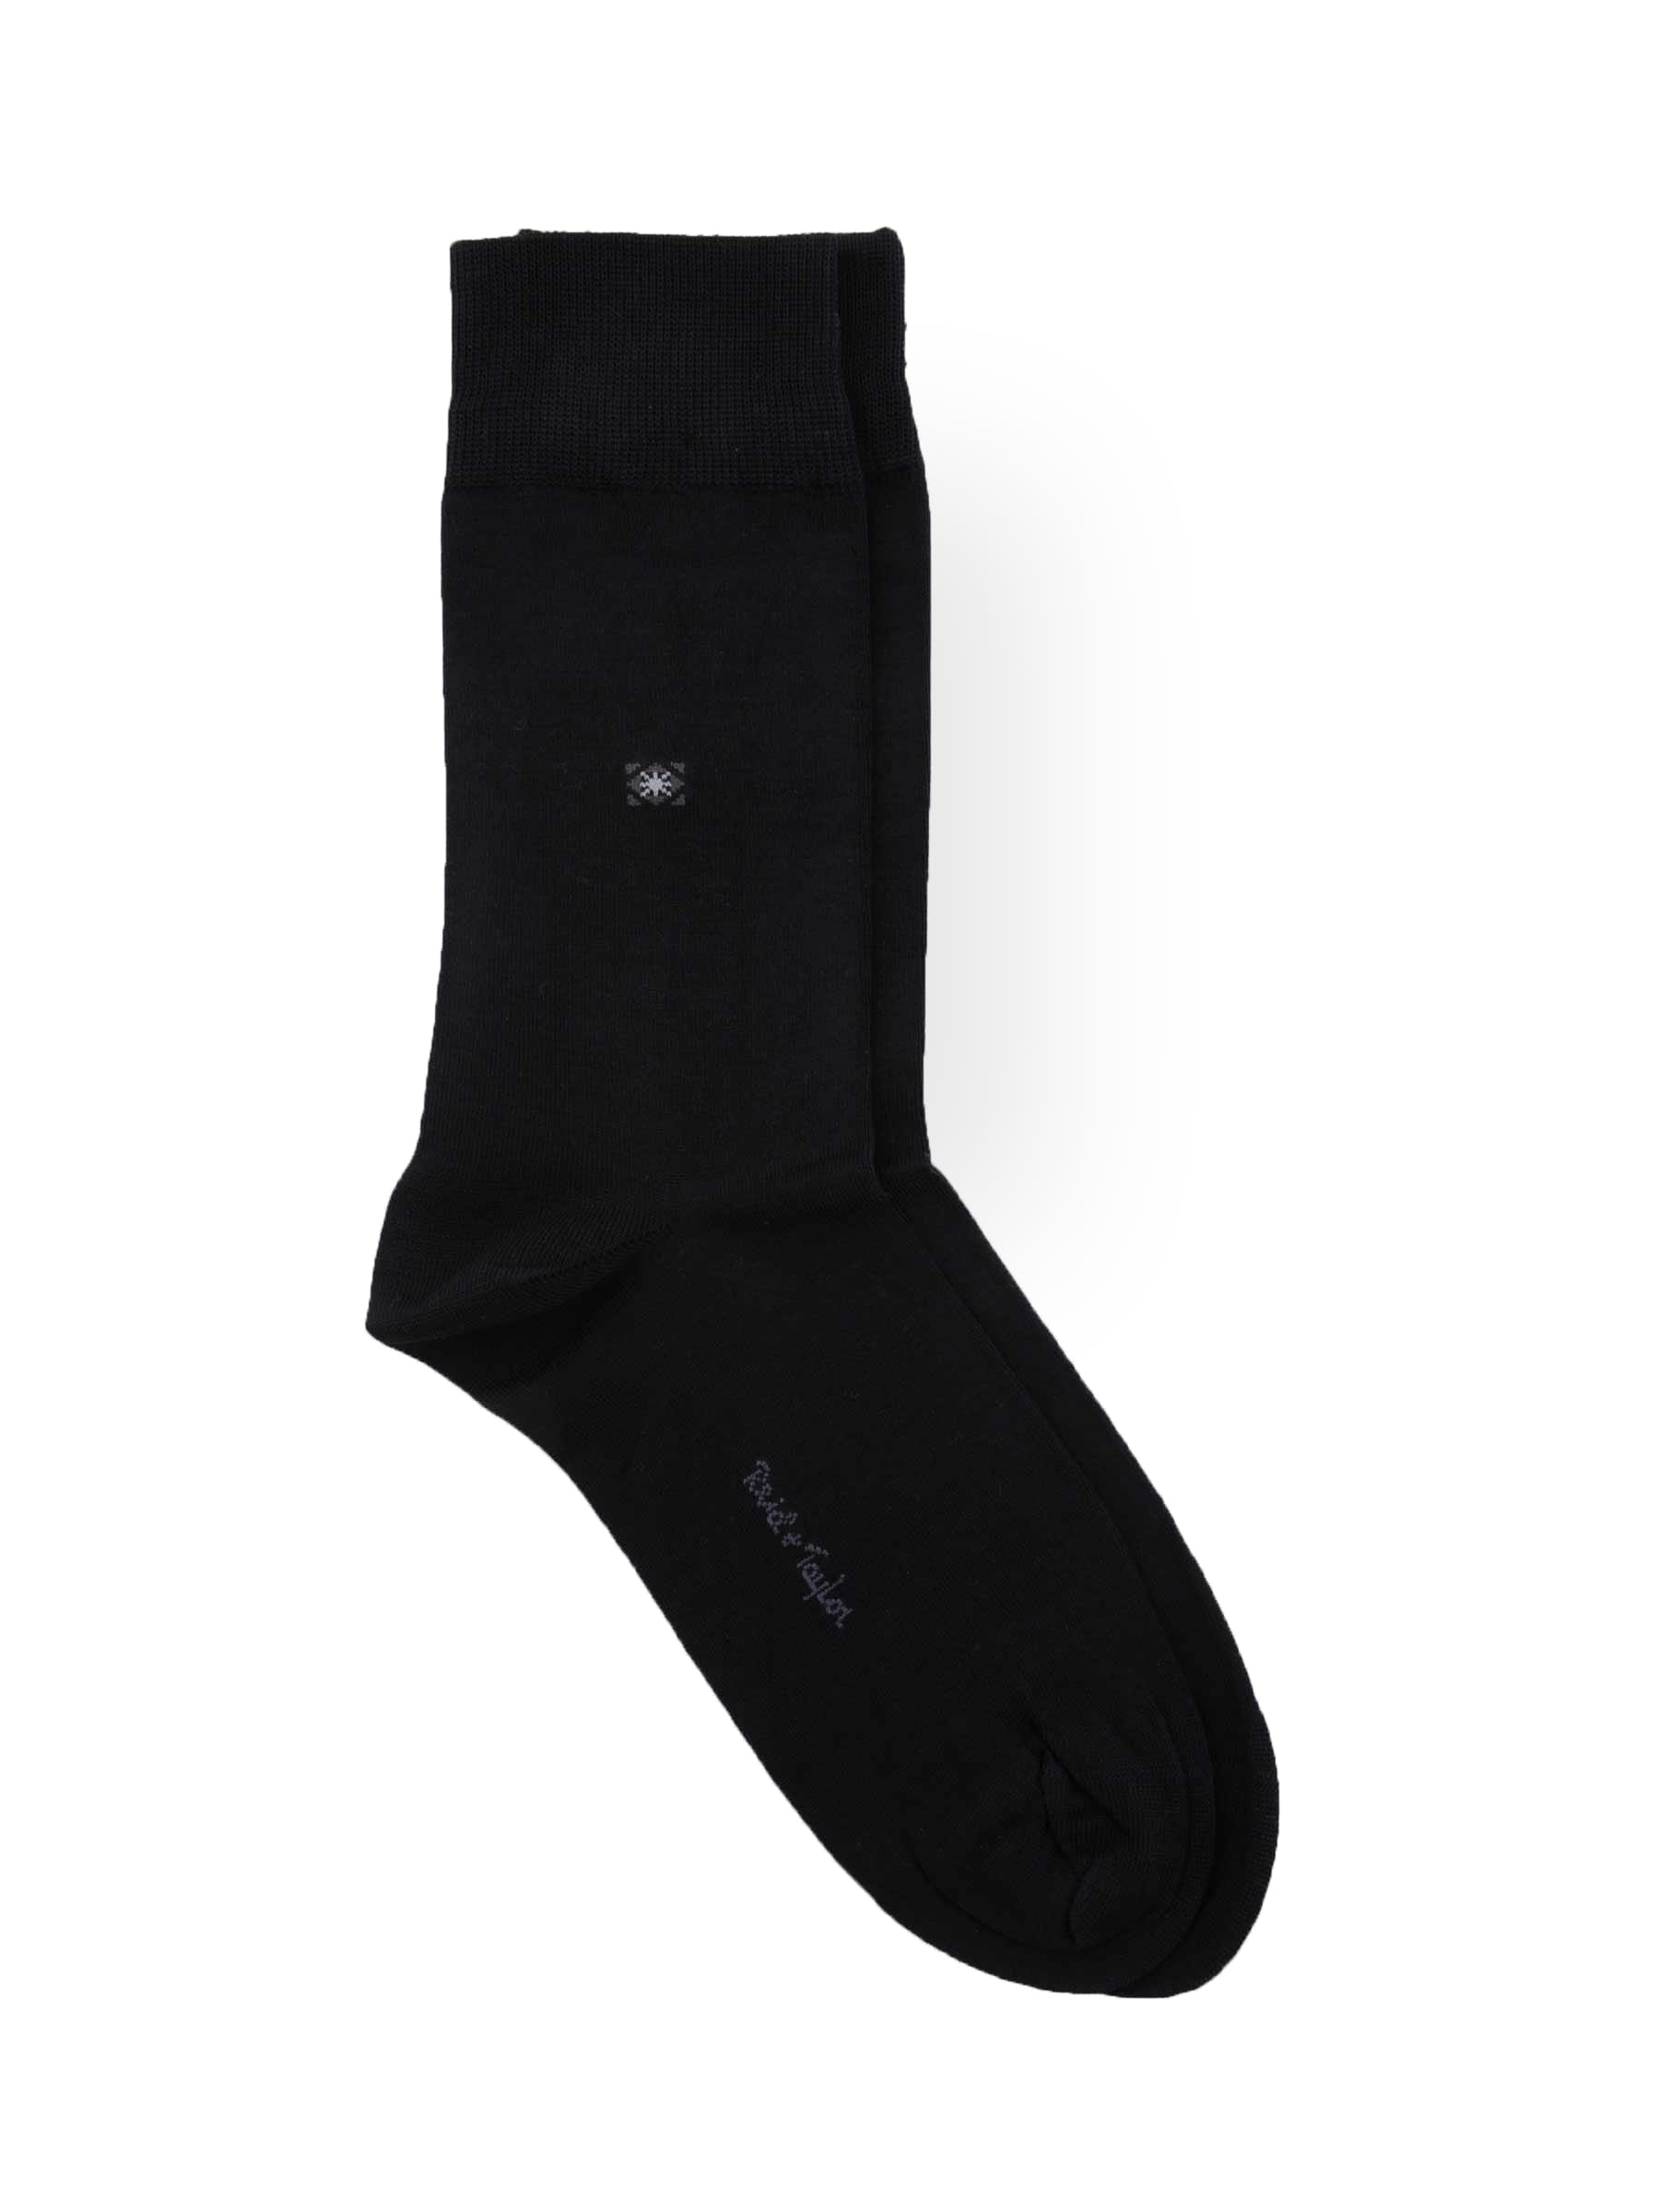 Reid & Taylor Men Solid Black Socks